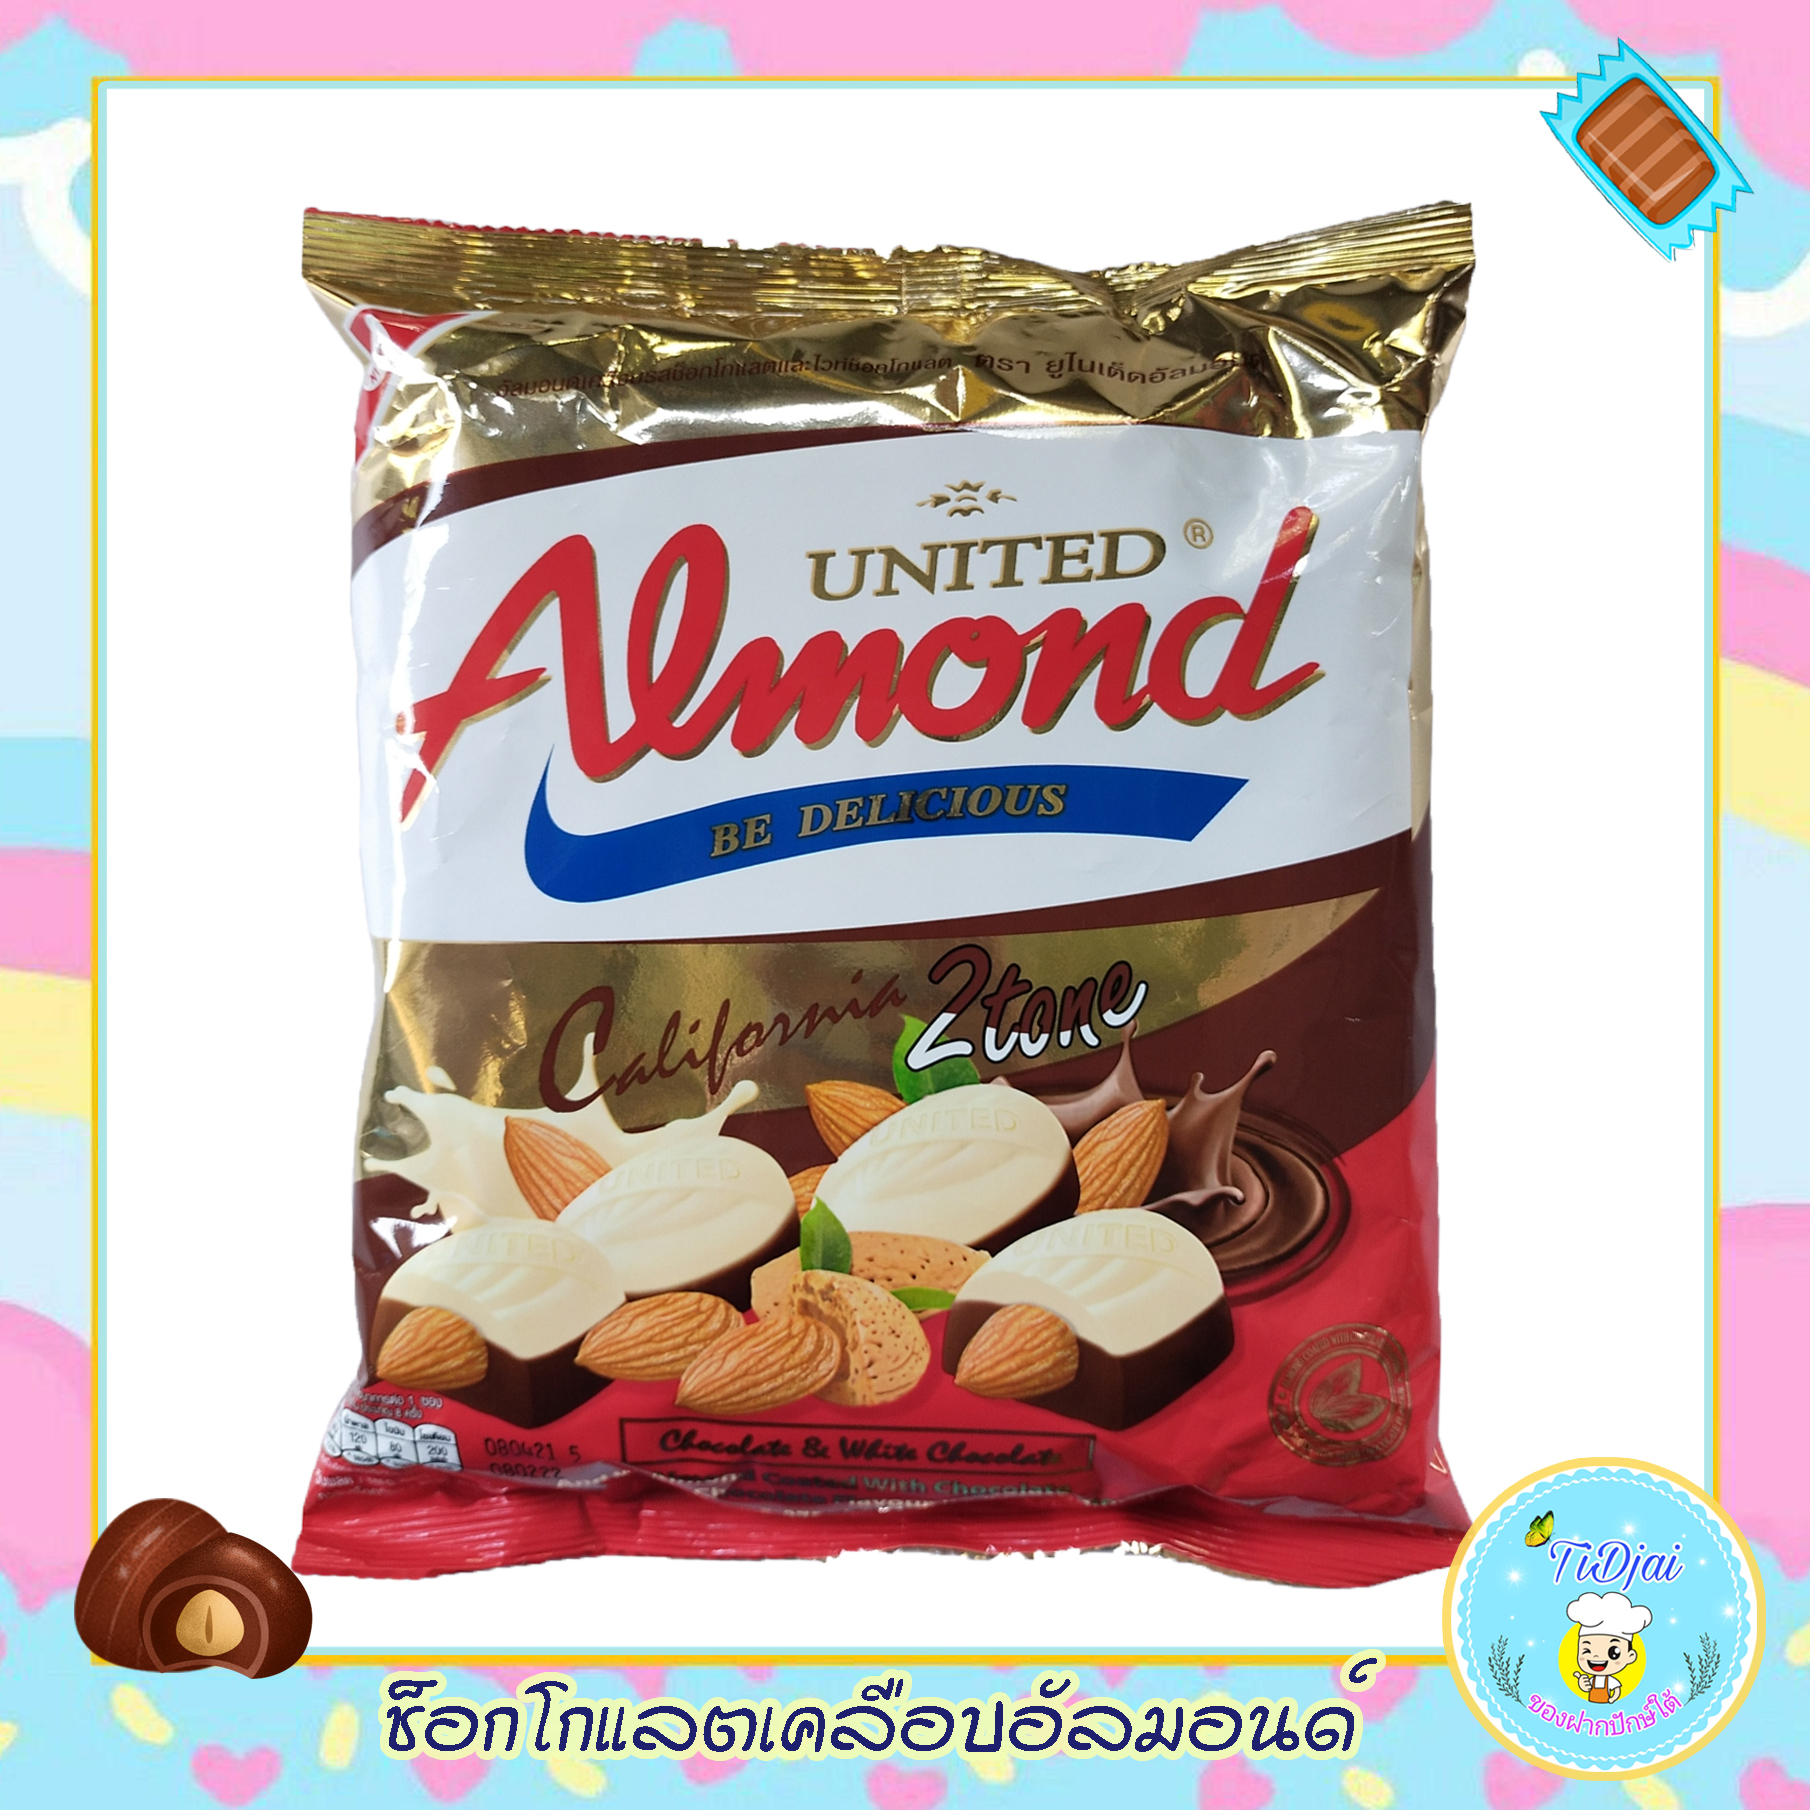 ช็อกโกแลตและไวท์ช็อกโกแลตเคลือบอัลมอนด์ แอลมอนด์ เคลือบ ช็อคโกแลต ช็อกโกแลต ทูโทน United Almond Chocolate & White Chocolate 275g.